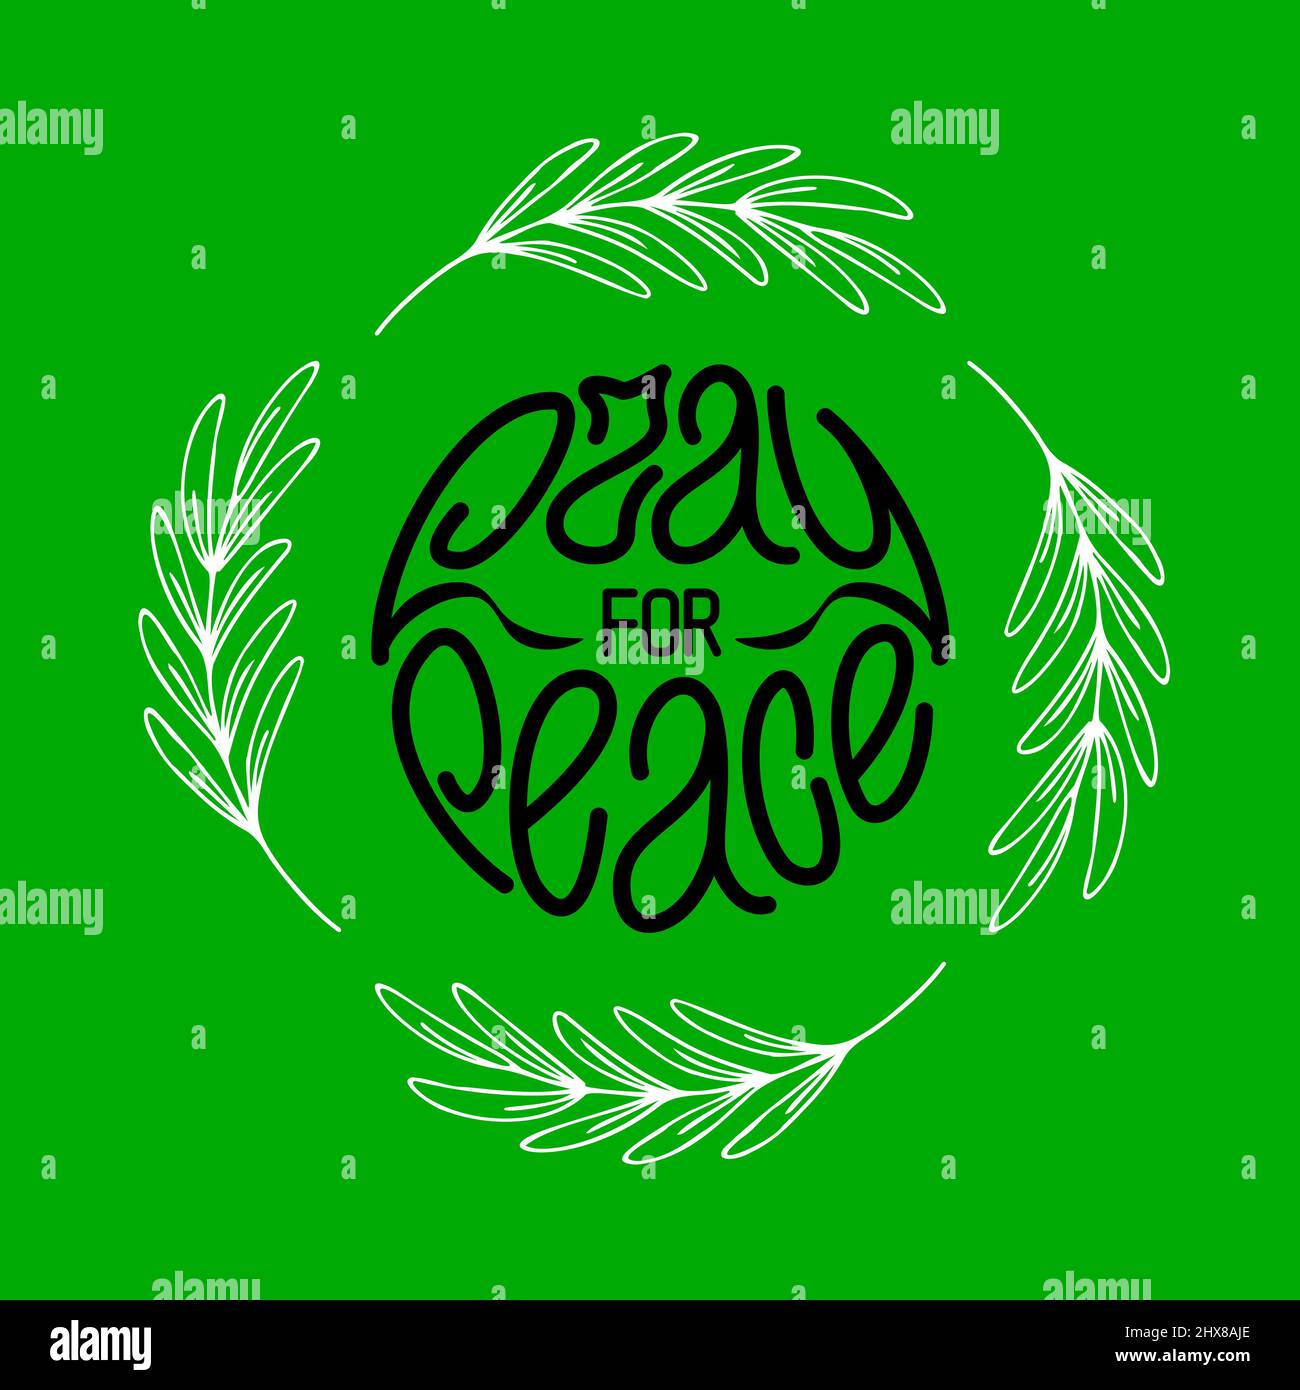 Betet für den Frieden. Handgezeichneter Schriftzug auf Grün mit vier Olivenzweigen in Runden. Vektorgrafik Stock Vektor